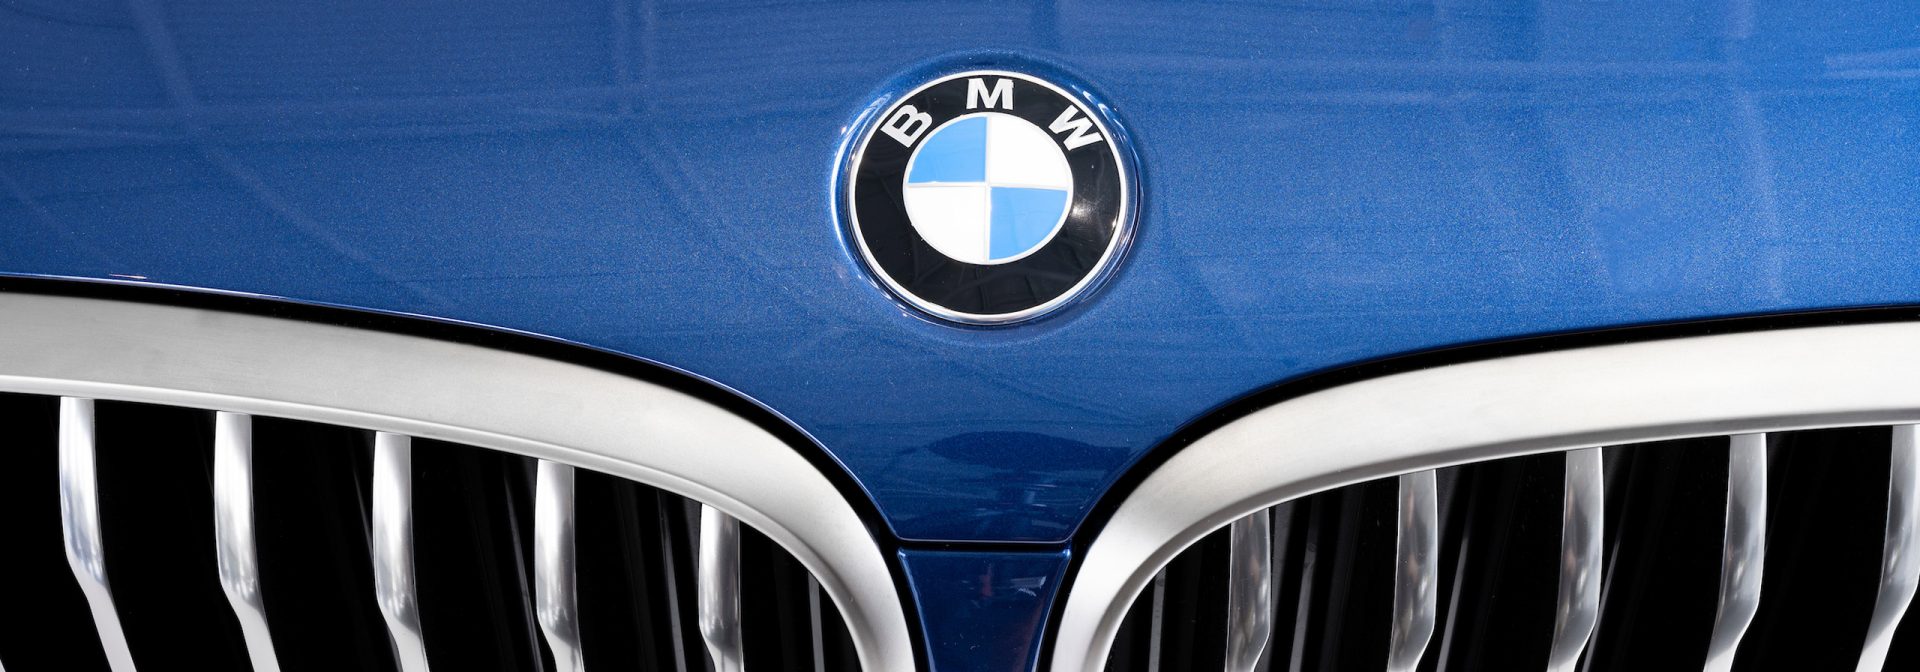 BMW Logo on a blue car